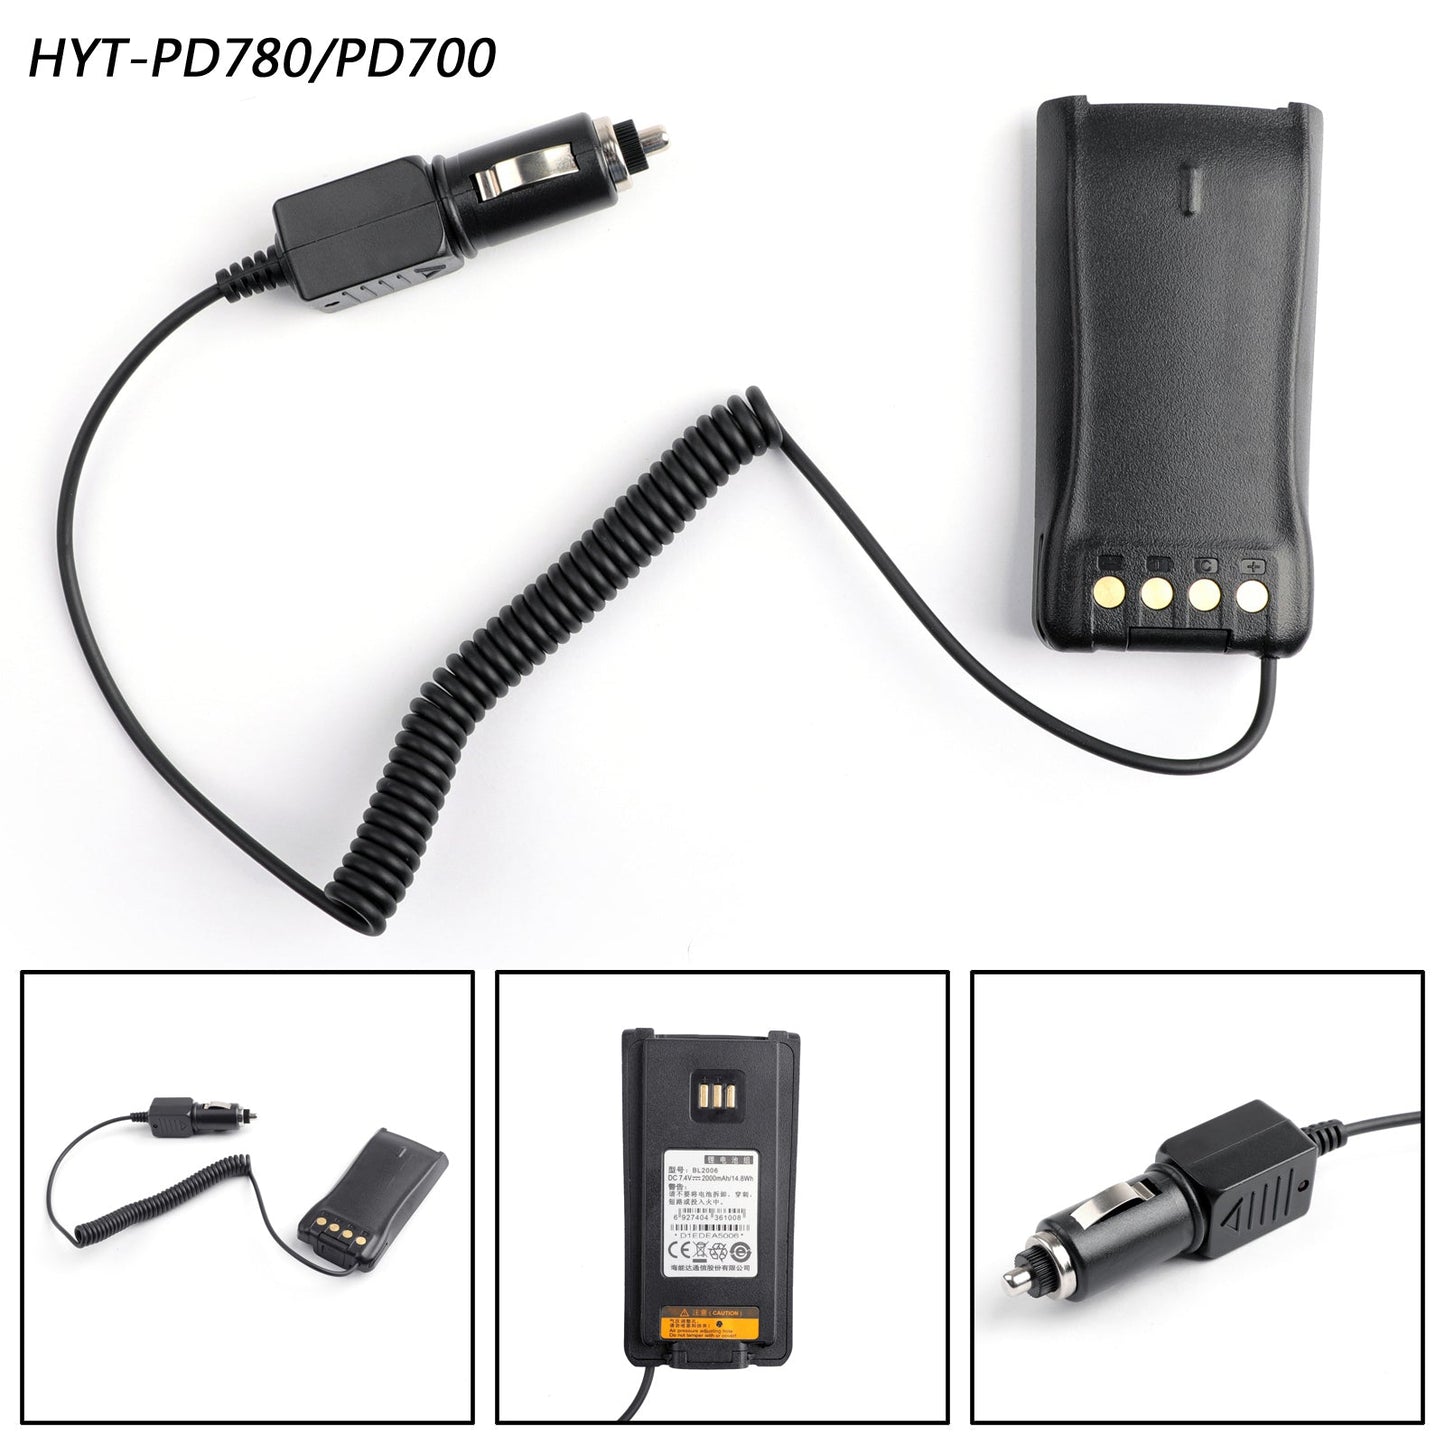 Autobatterie Eliminator Zubehör für Hytera PD780 PD700 Radio Walkie Talkie